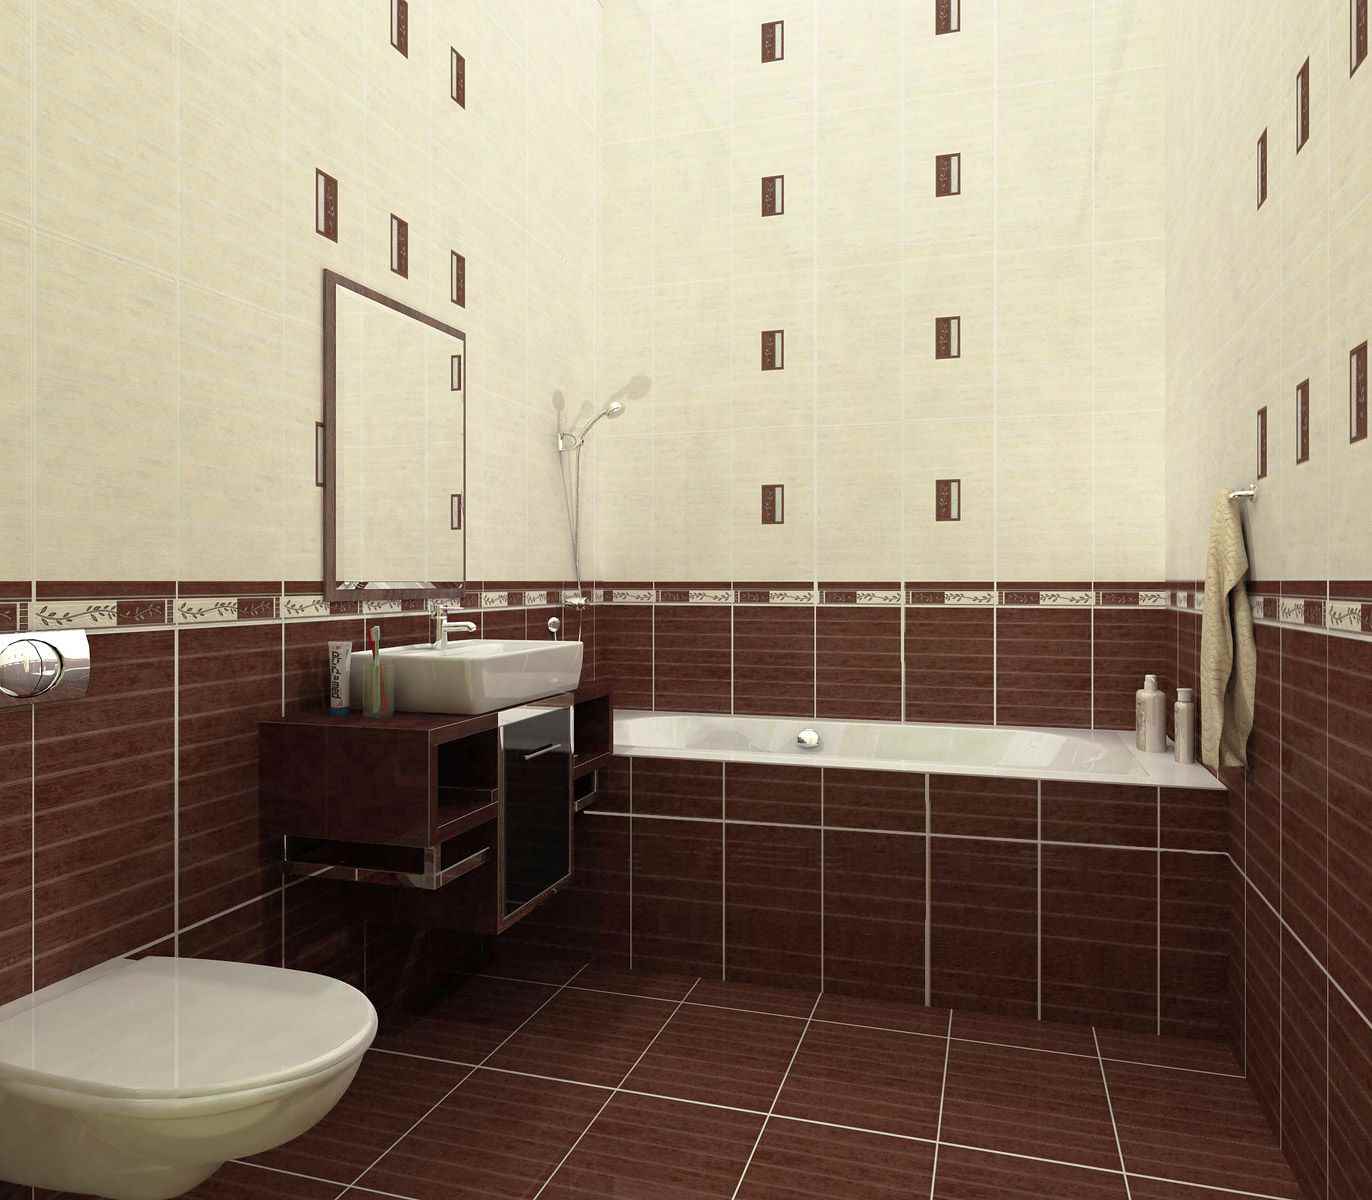 version du beau style de pose de carreaux dans la salle de bain